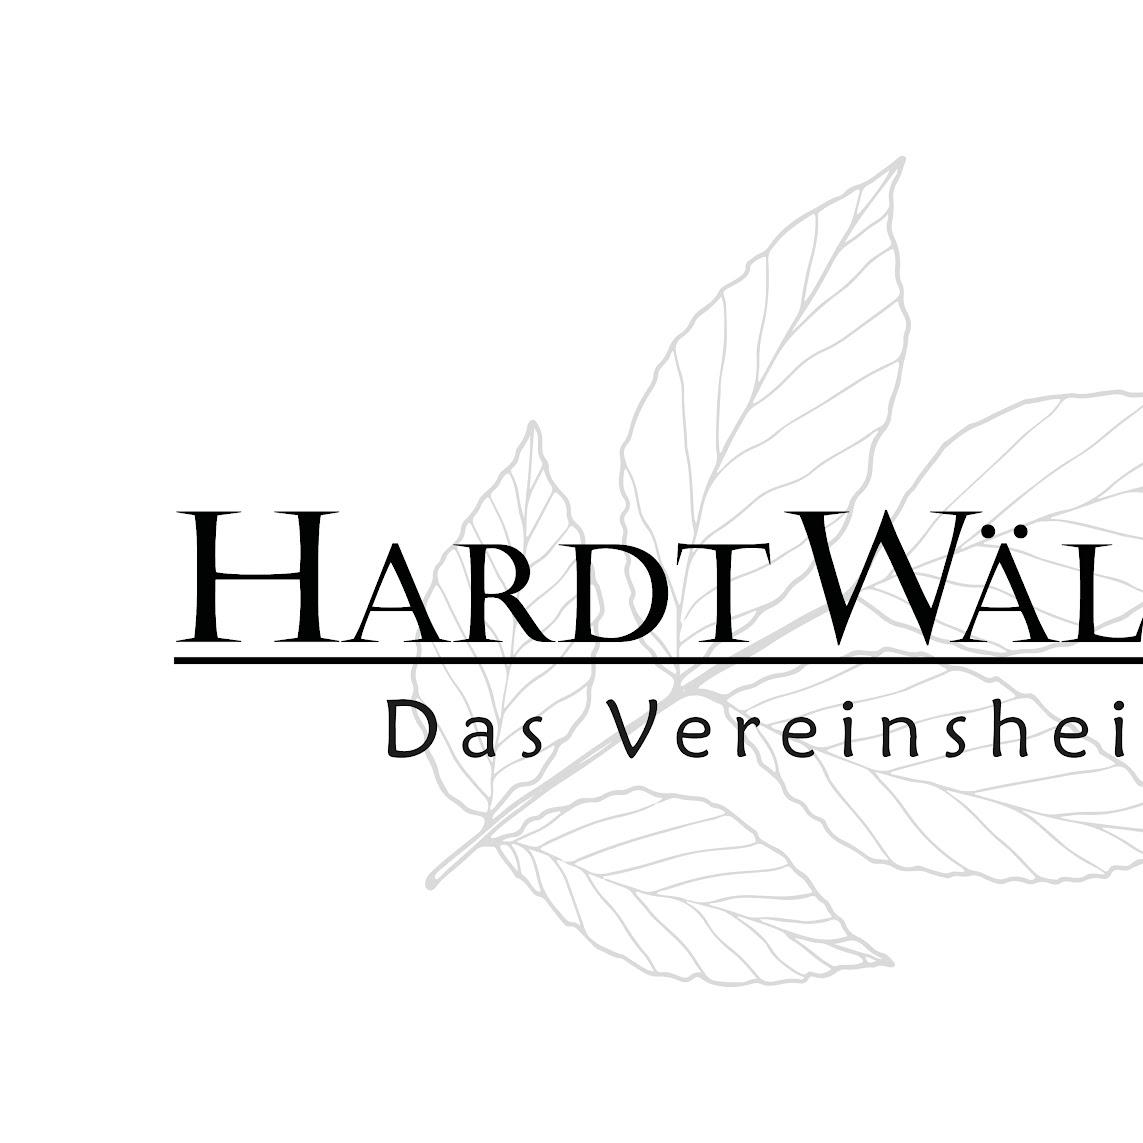 Restaurant "Hardtwäldle - Das Vereinsheim" in Eberdingen